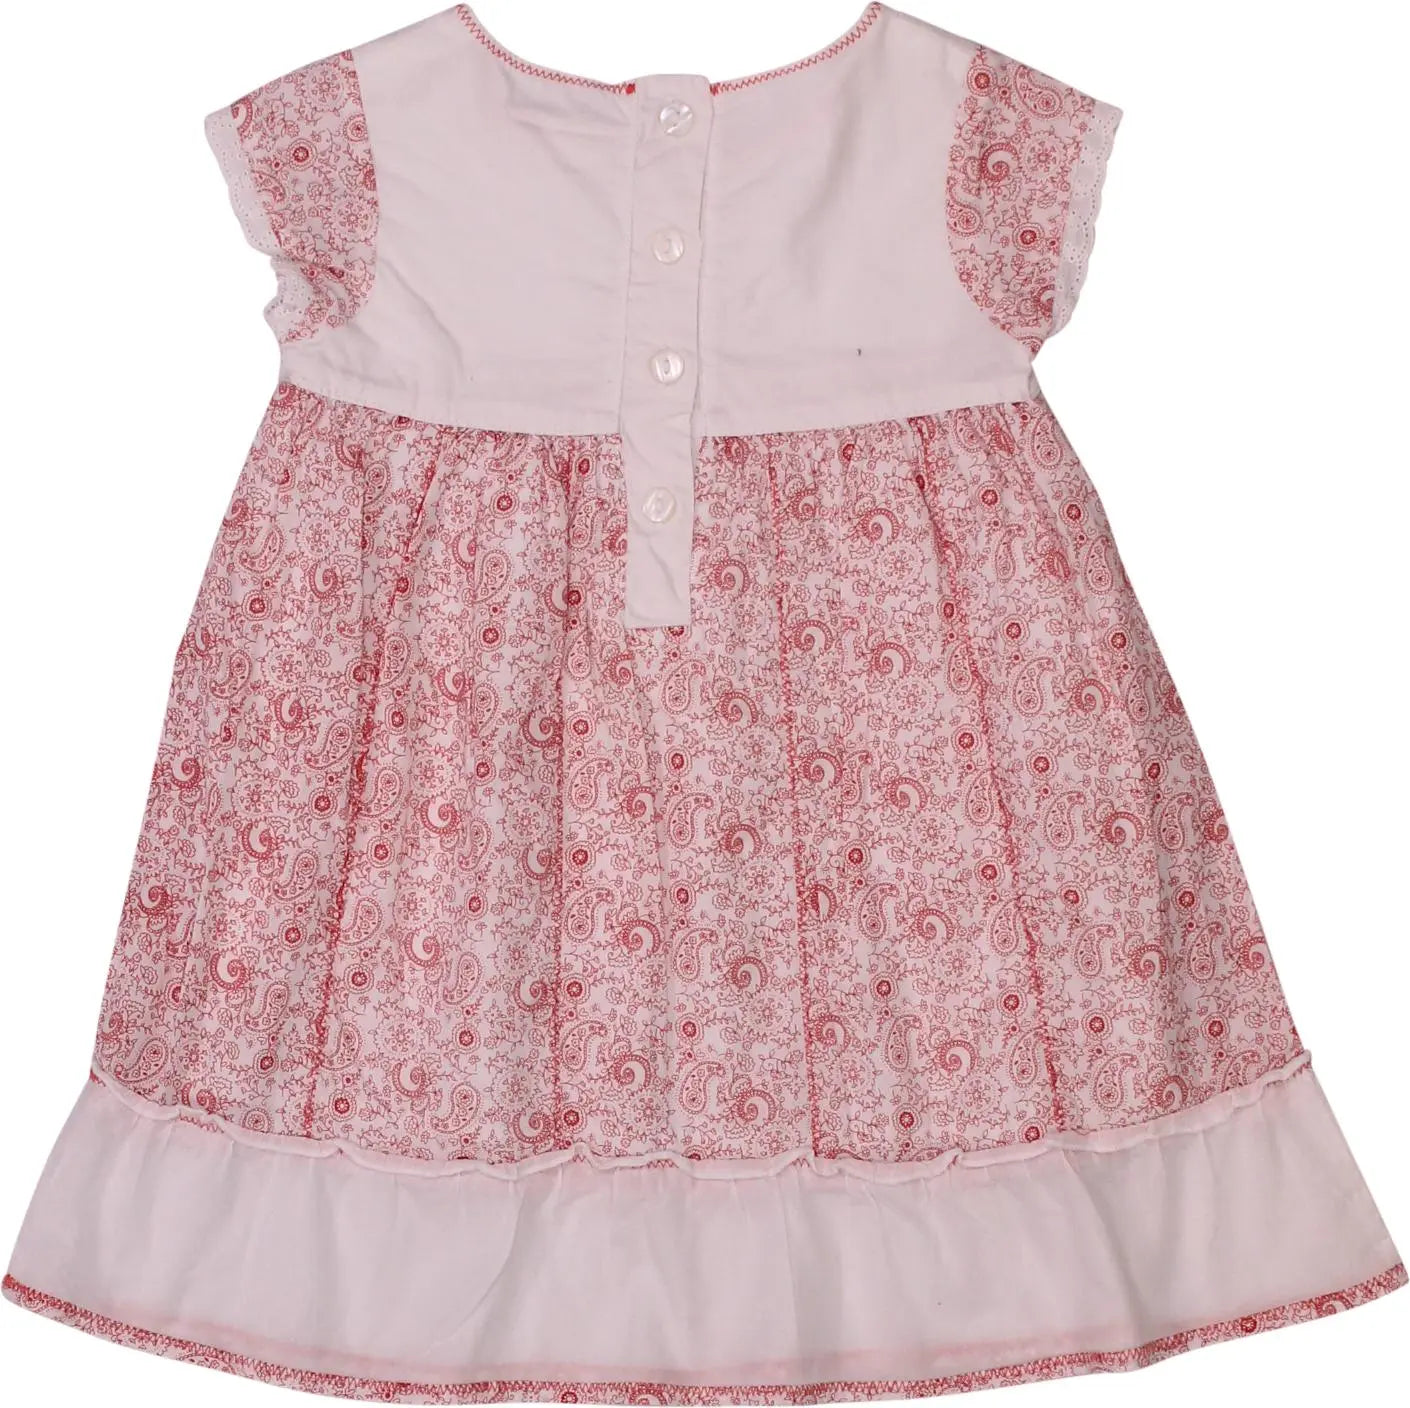 Inscene Babies - Vintage Dress- ThriftTale.com - Vintage and second handclothing